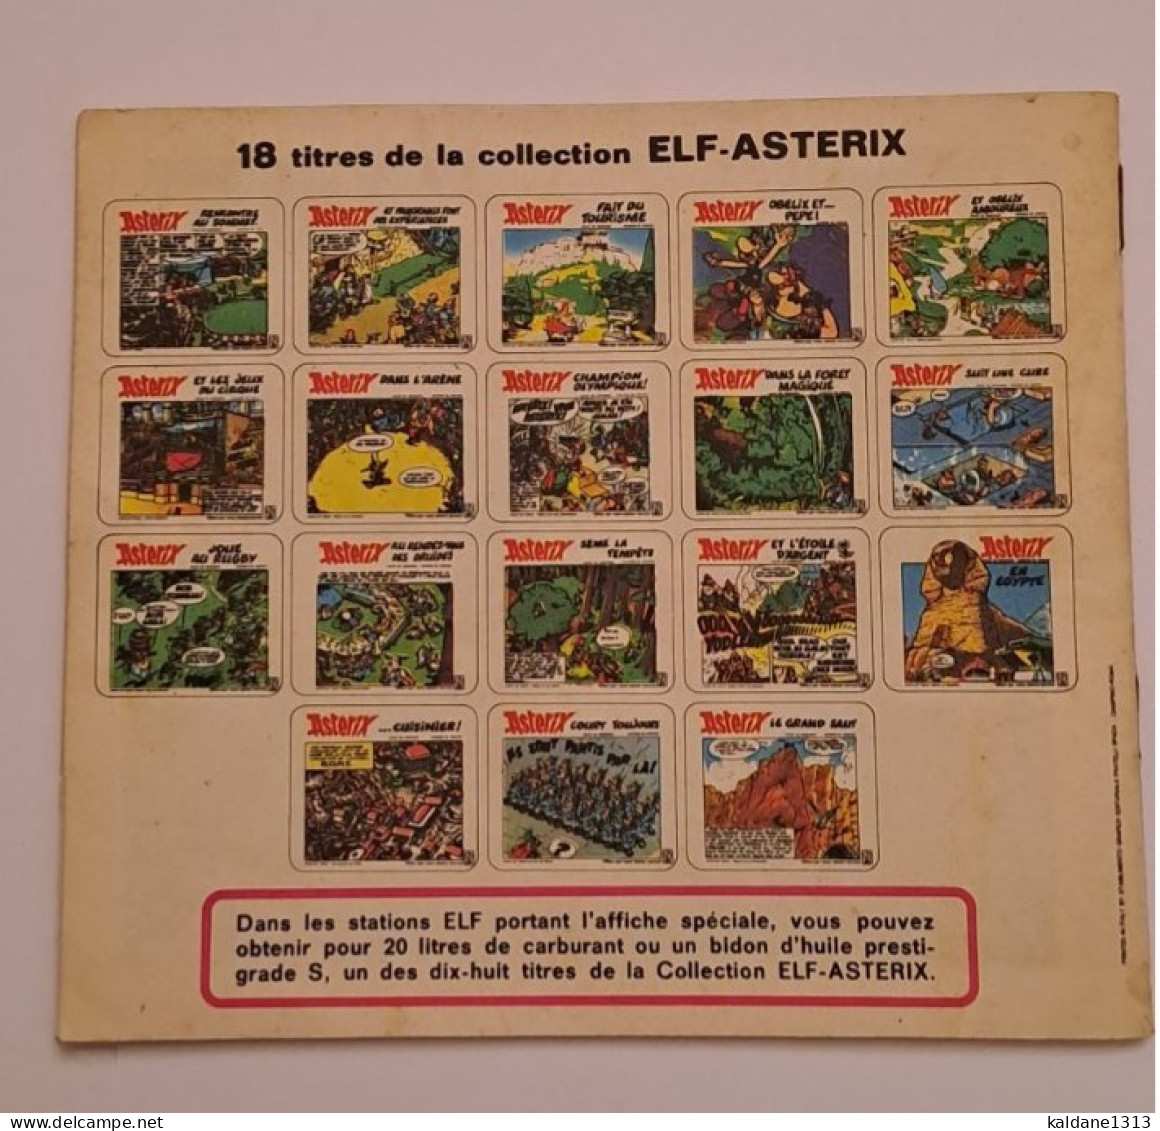 Astérix Suit Une Cure Mini Album Offert Les Stations Essence Elf 1973 - Asterix